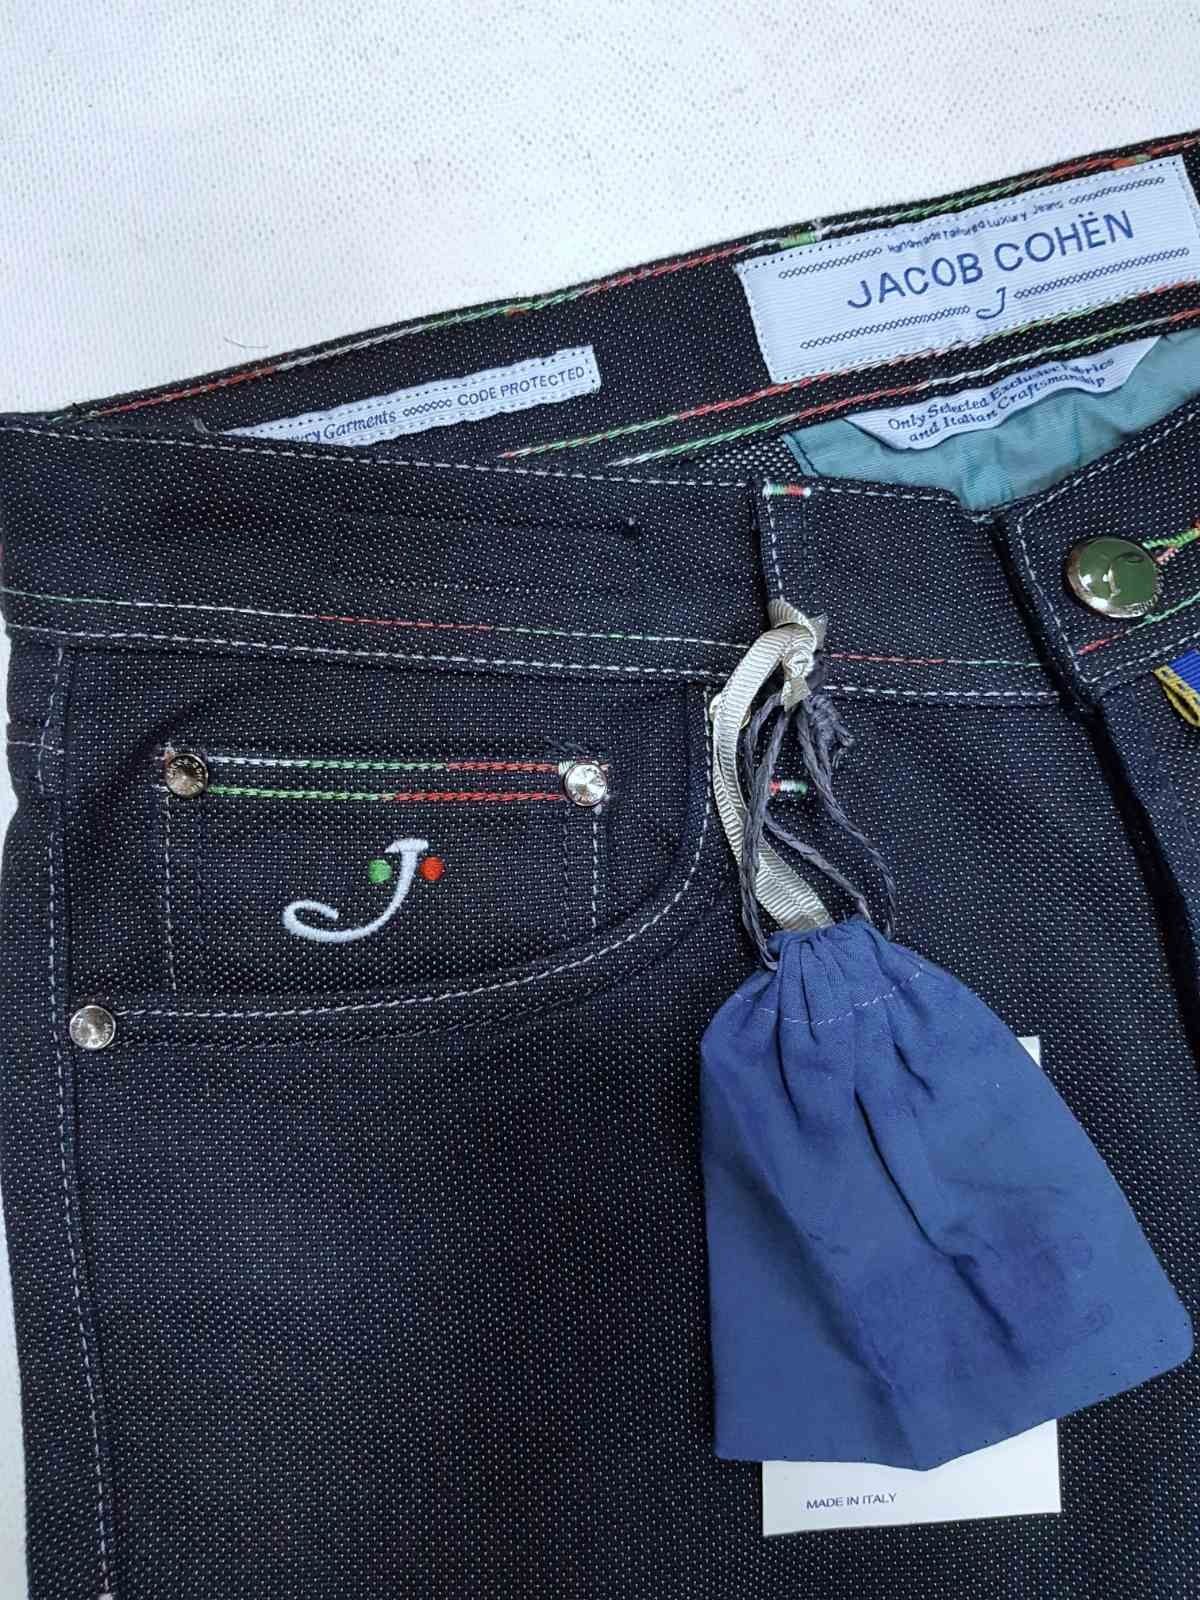 Мужские джинсы, штаны Jacob Cohen